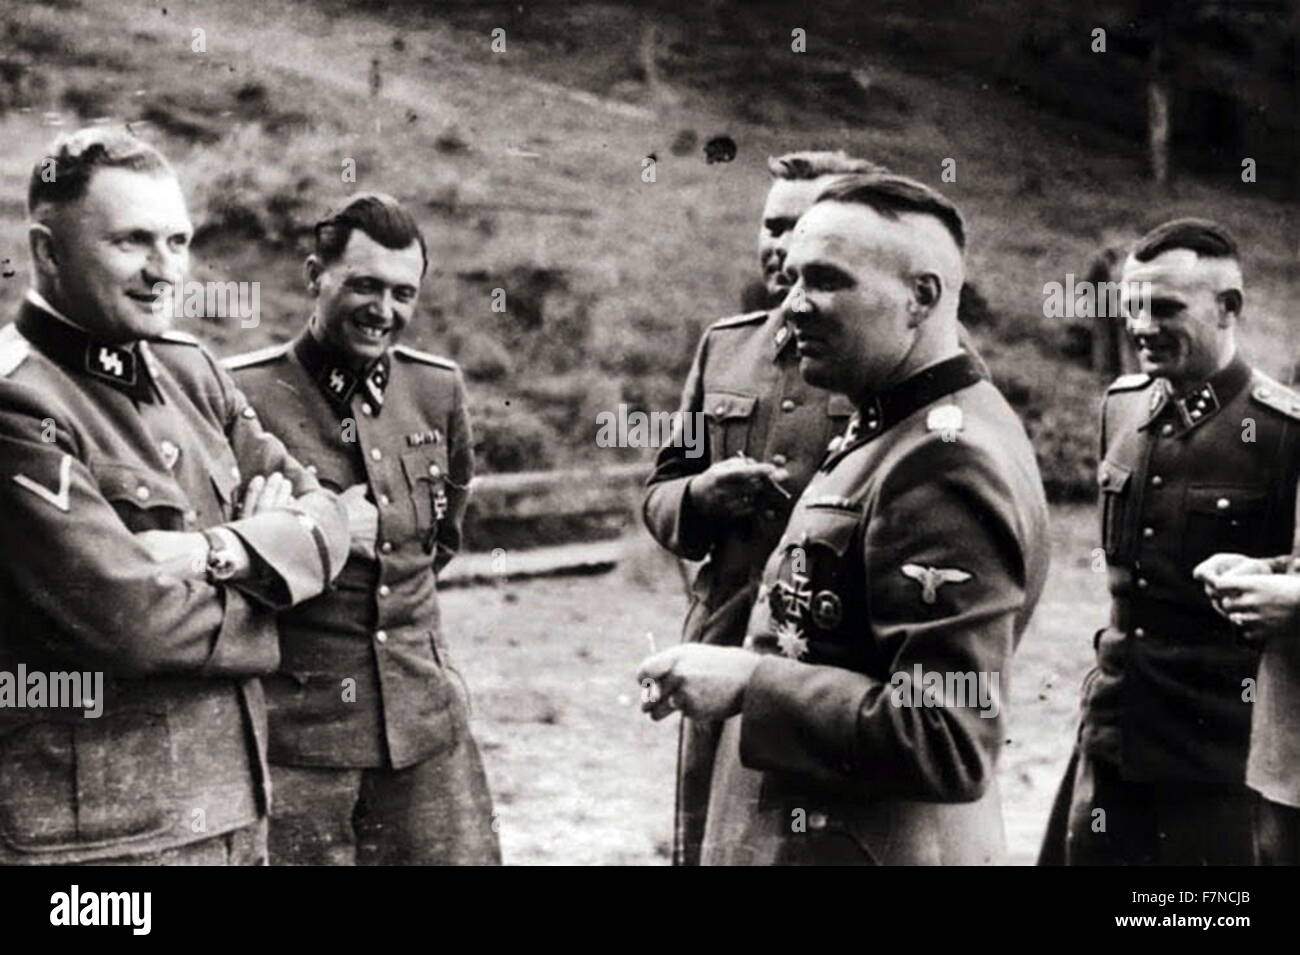 Gruppe von SS-Offiziere in Auschwitz: von links: Karl Hoecker, Dr. Josef Mengele, Karl-Friedrich Hoecker (11. Dezember 1911 – 30. Januar 2000) war ein SS-Obersturmführer (Oberleutnant) und der Adjutant Richard Baer, der Kommandant des KZ Auschwitz von Mai 1944 bis Dezember 1944 war Stockfoto